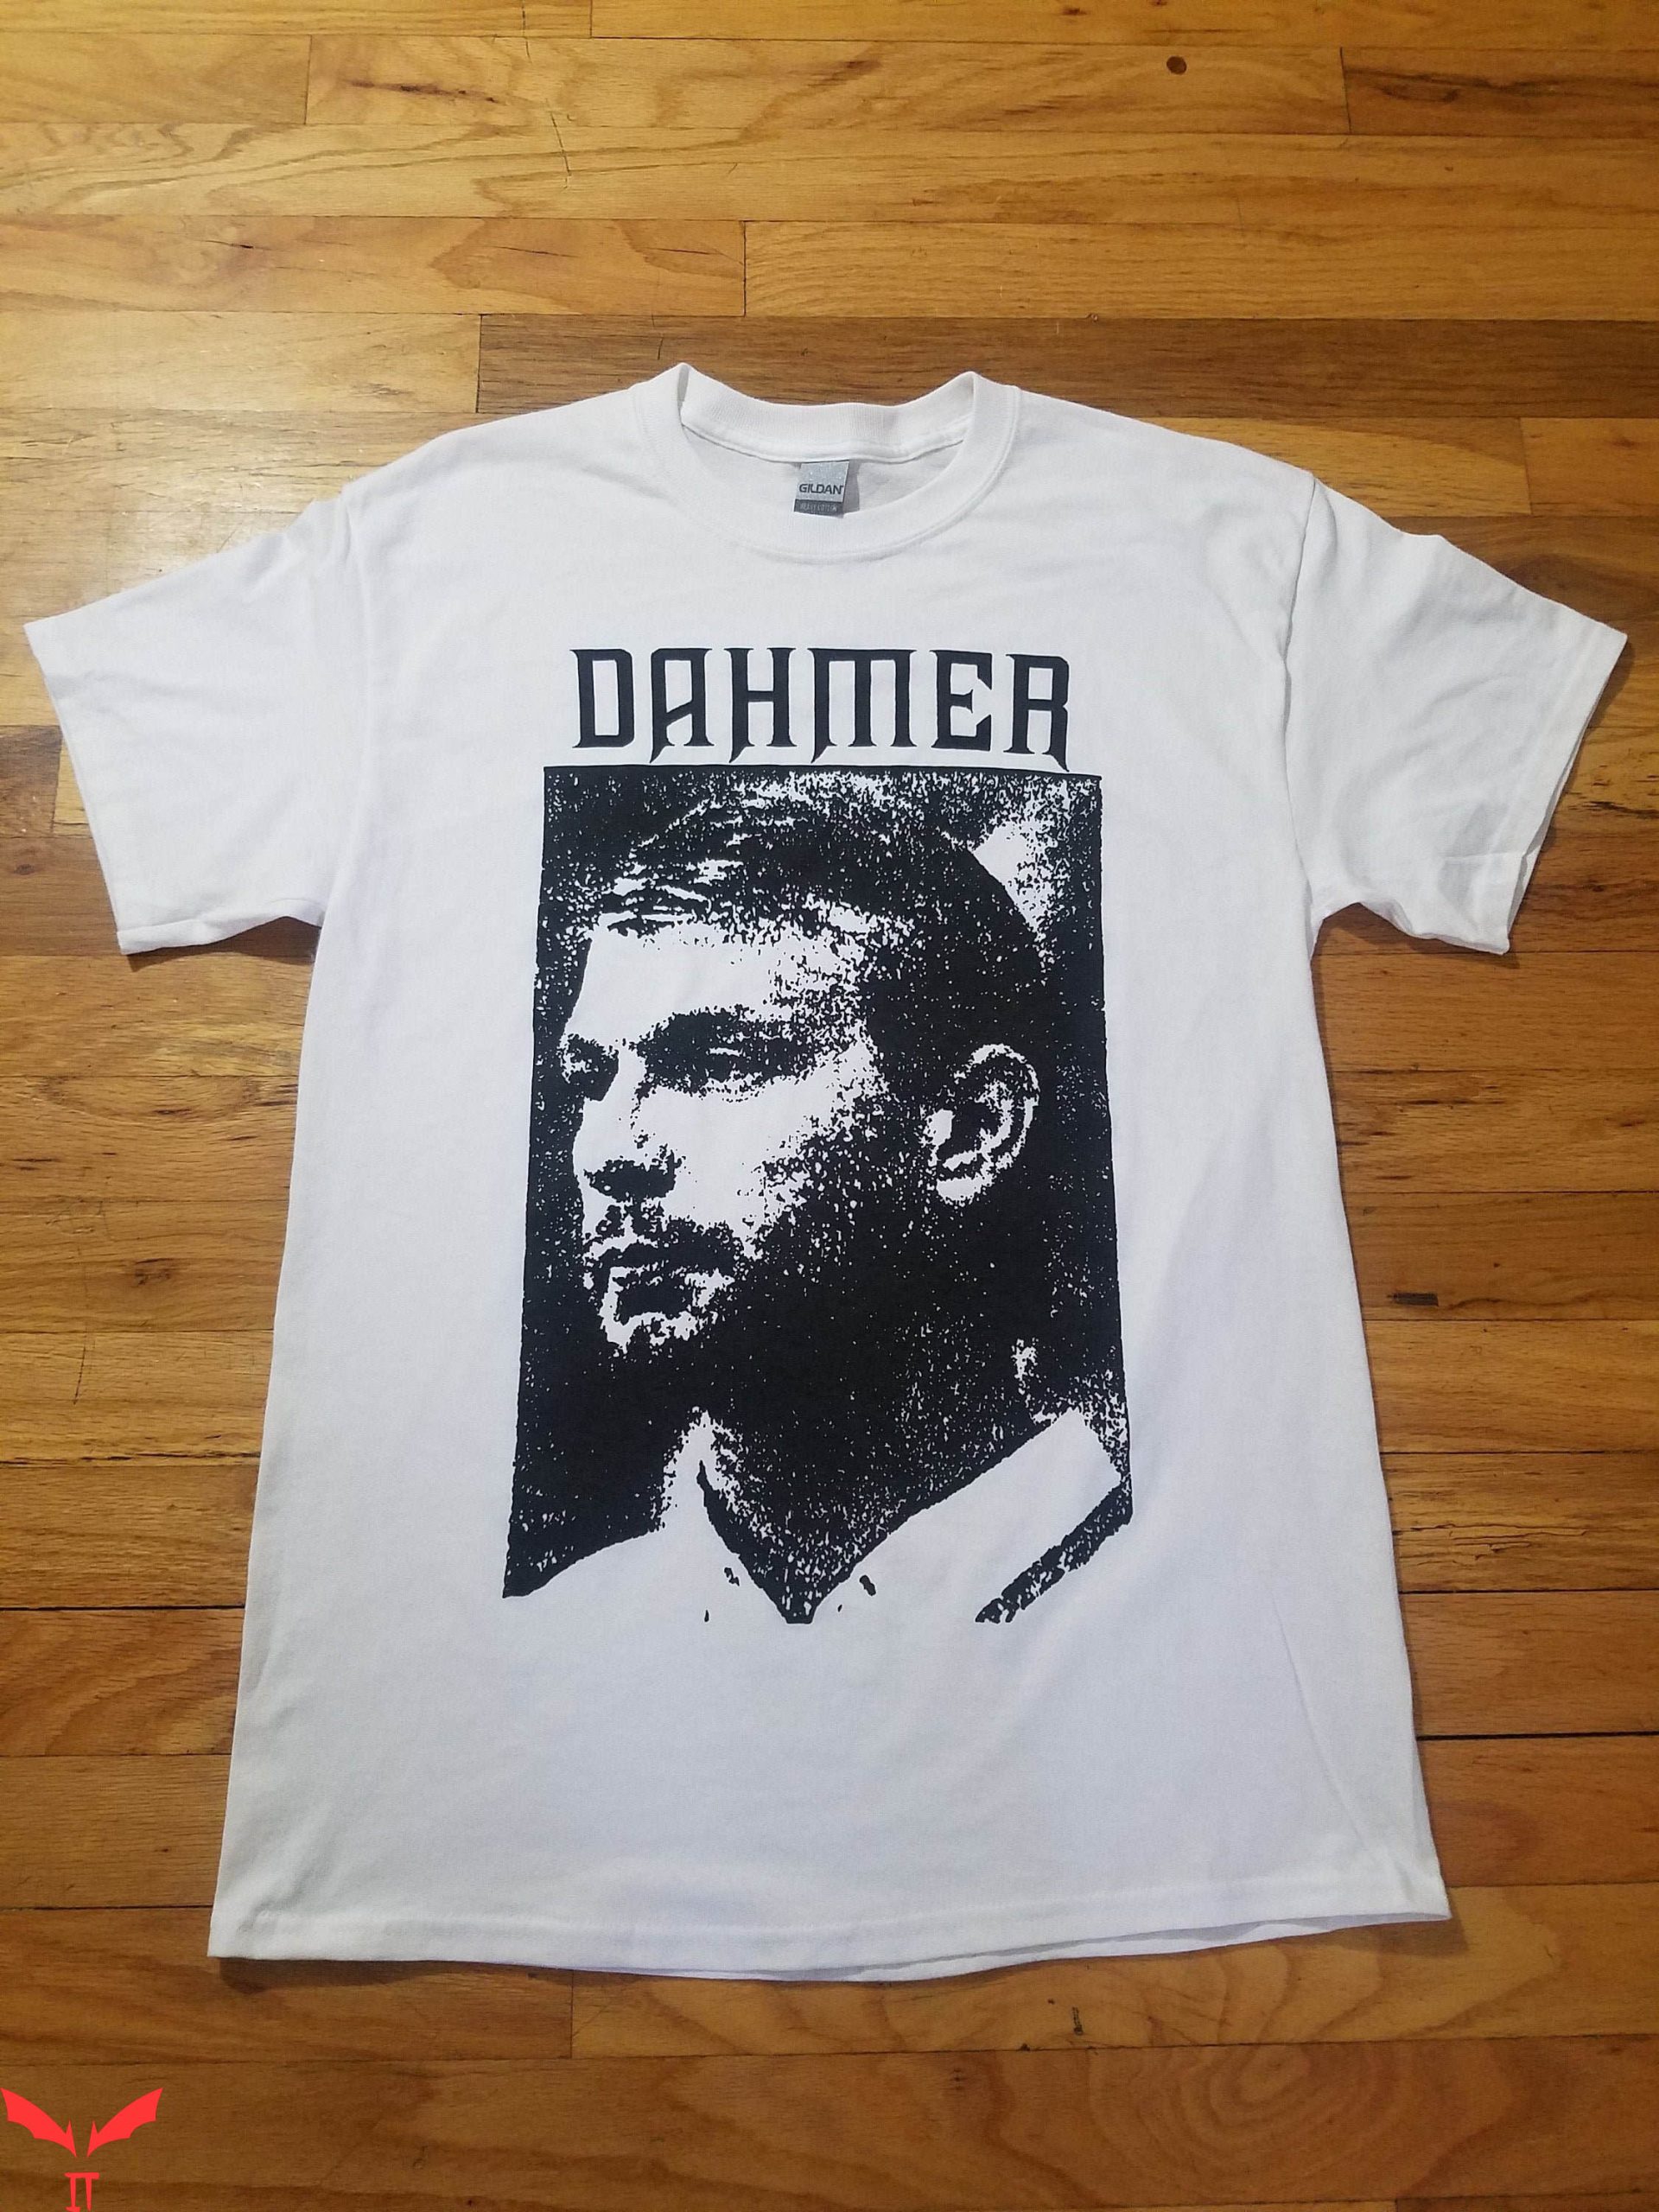 Choke Me Like Bundy Eat Me Like Dahmer T-Shirt 96 Demo